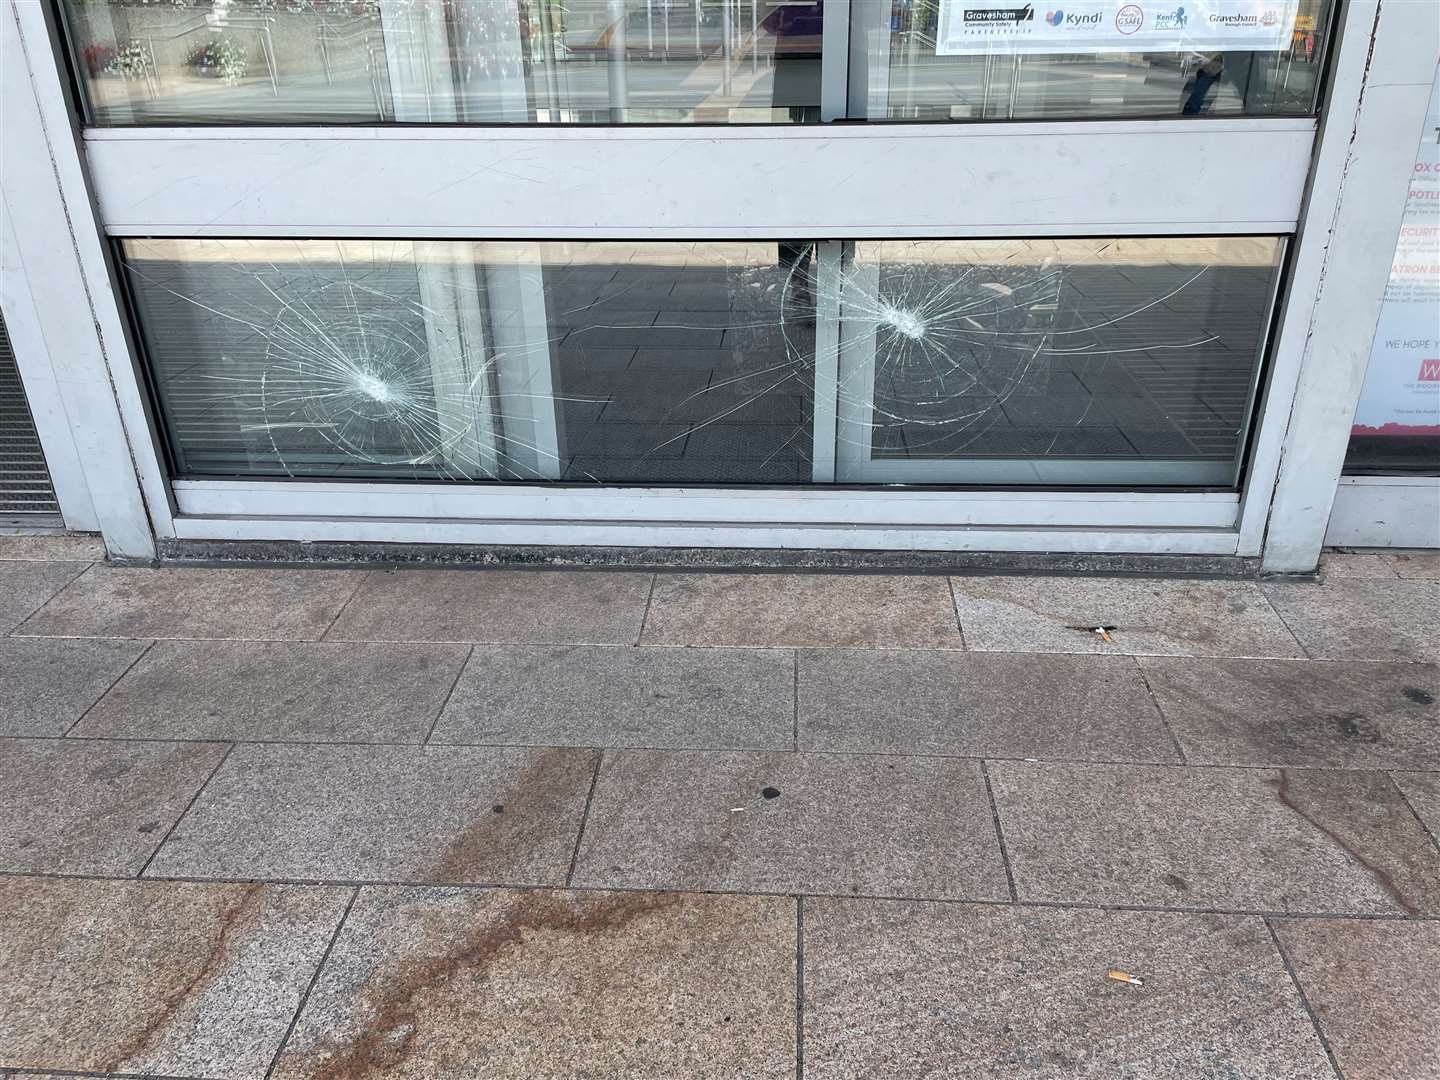 The windows and doors have been broken